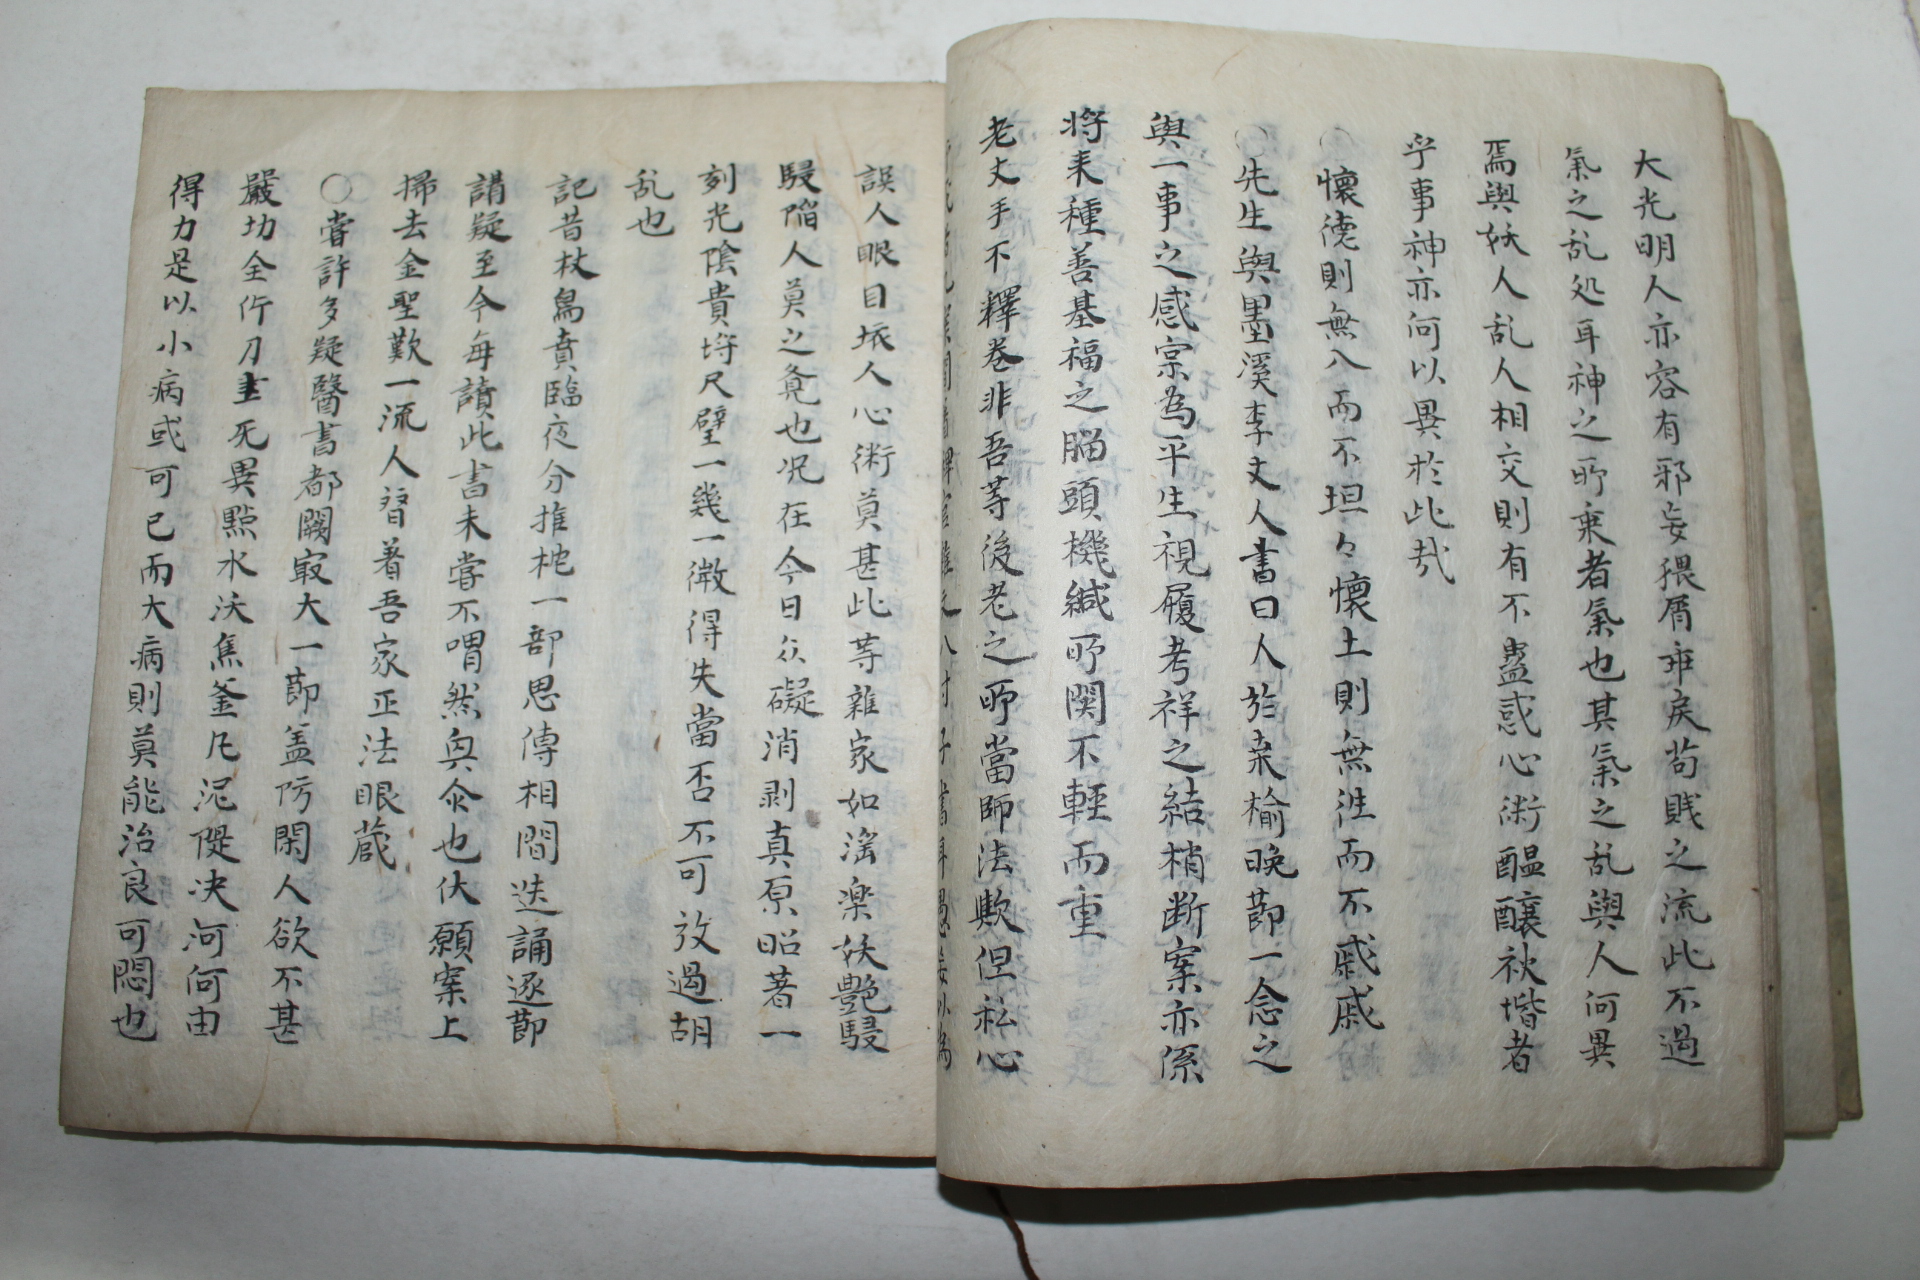 조선시대 필사본 화서선생아언(華西先生雅言) 1책